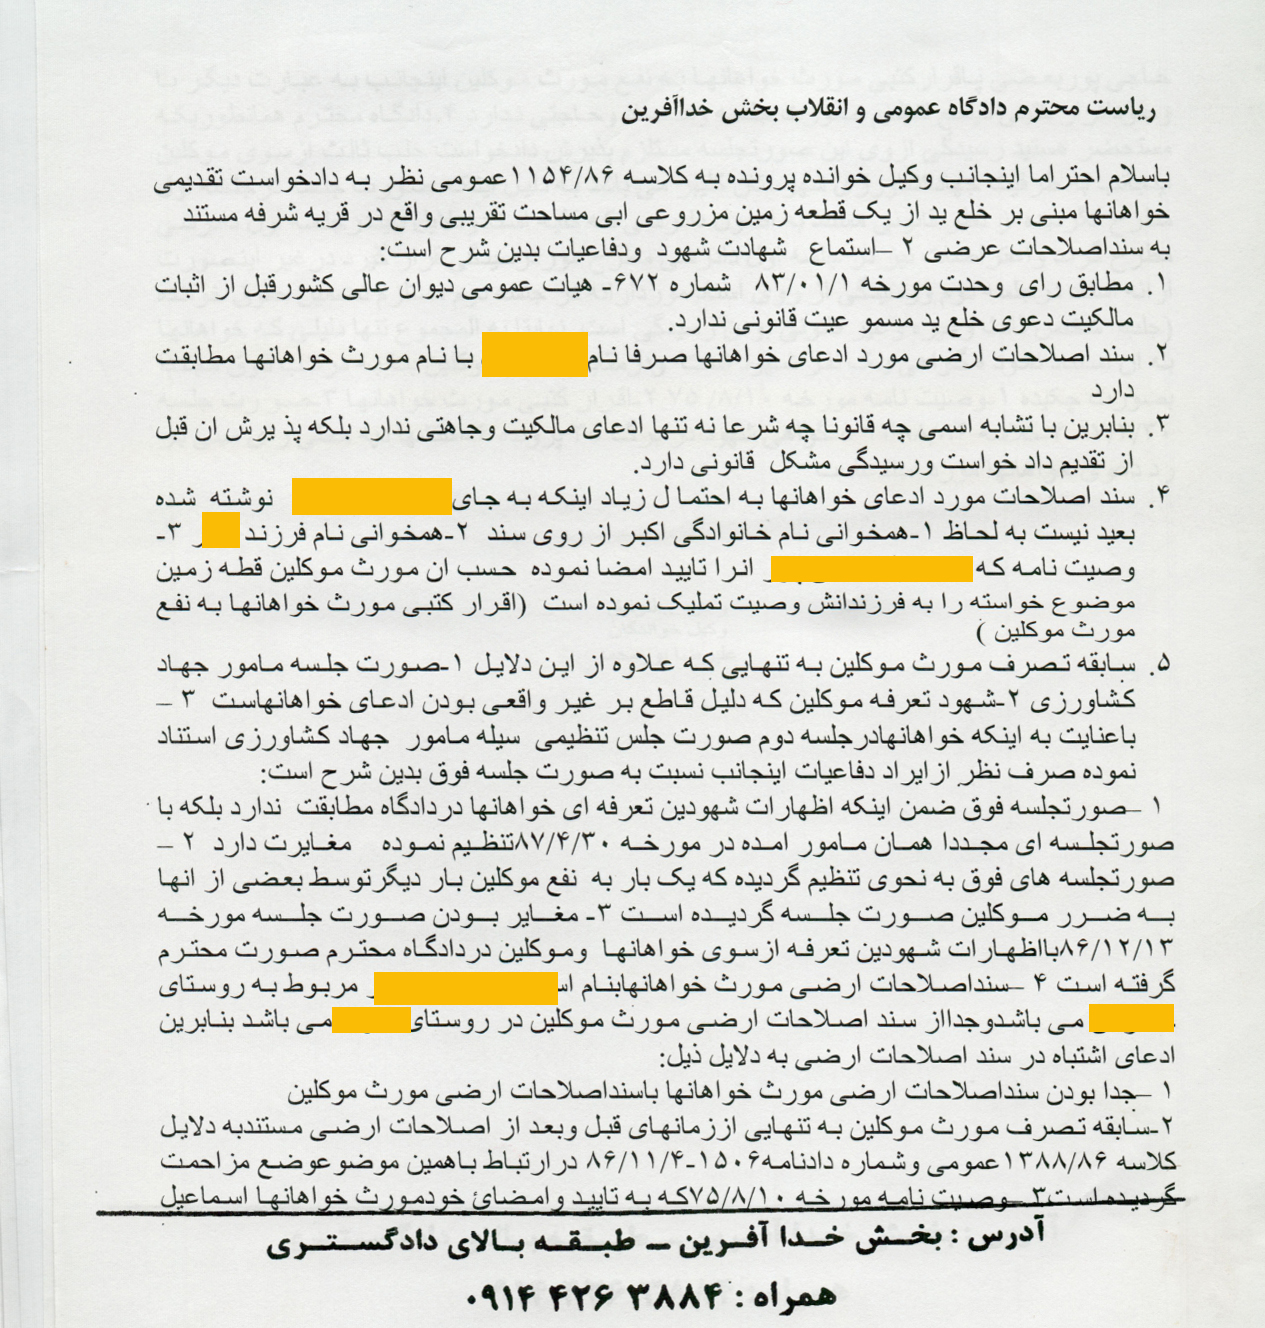 نمونه لایحه در خصوص امور ملکی موروث تنظیم شده توسط علیرضا پورمحمد 